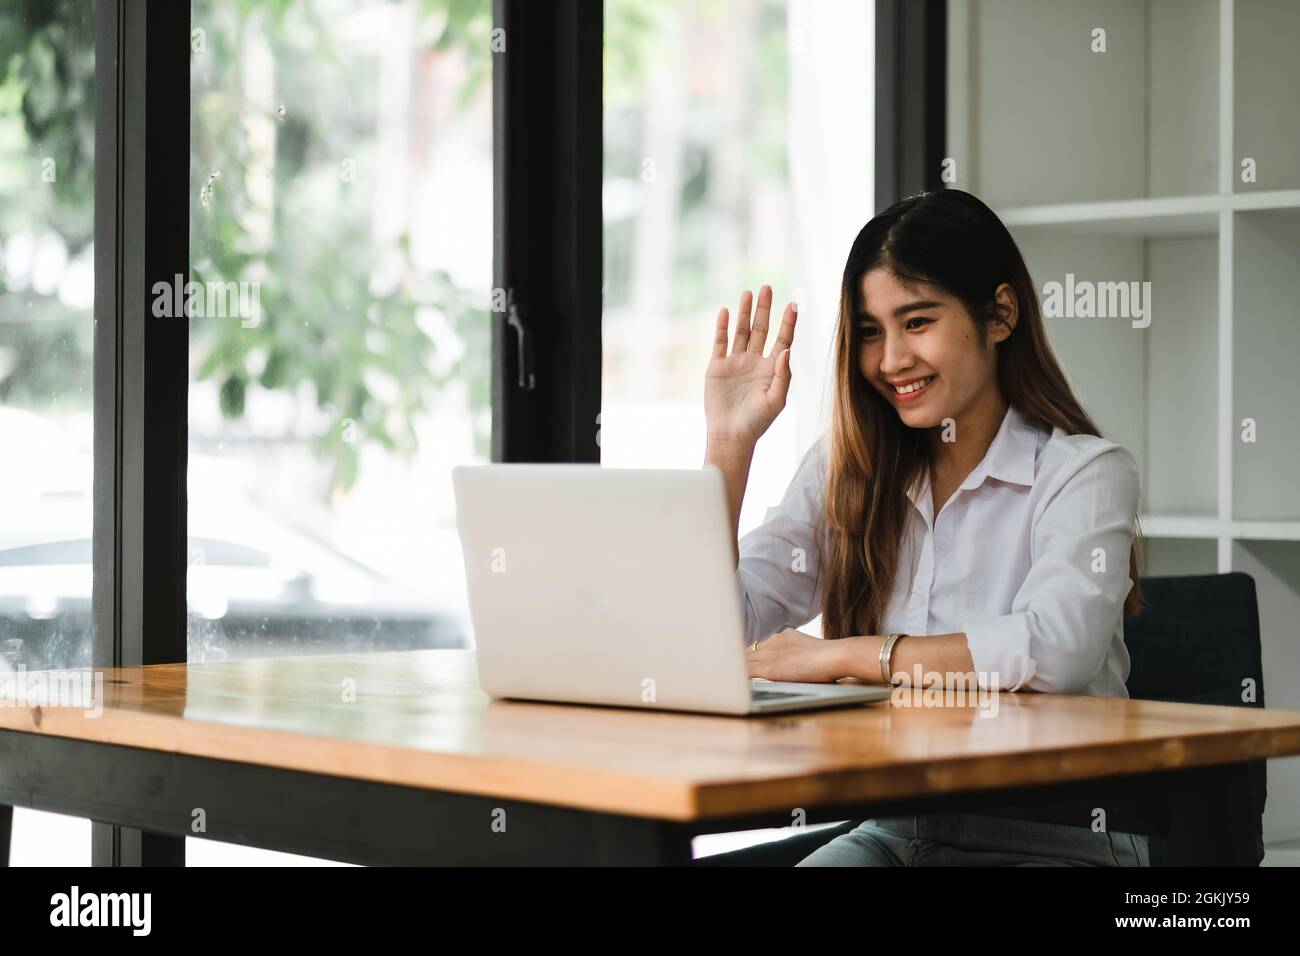 Une jeune fille asiatique souriante qui parle et se fait un bonjour lors d'un appel vidéo en ligne via un ordinateur portable, assis dans un café. Femme d'affaires gaie ayant Banque D'Images